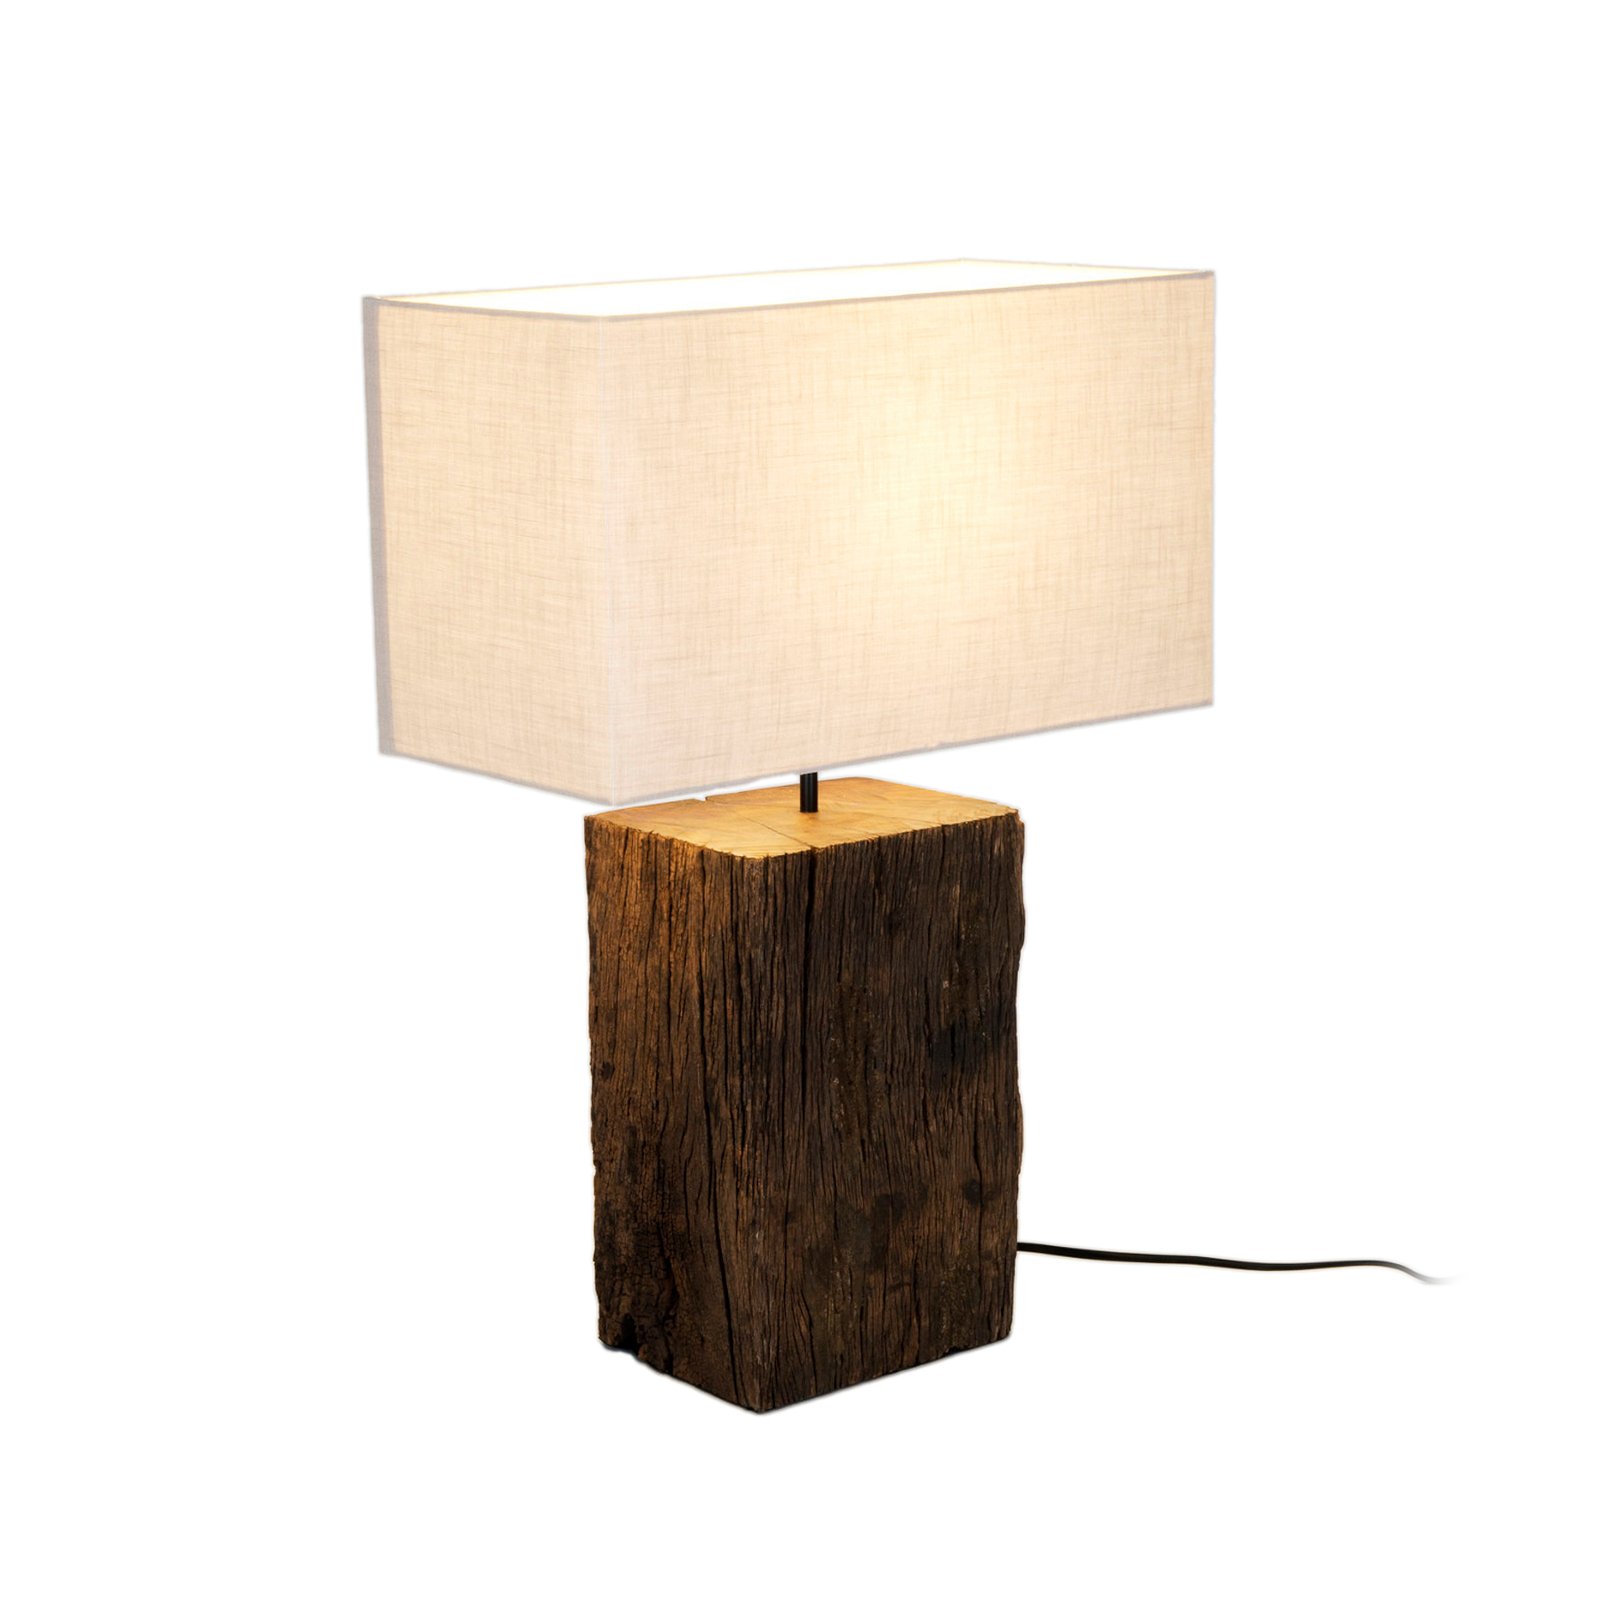 Tischleuchte Montecristo, holzfarben/beige, Höhe 59 cm, Holz